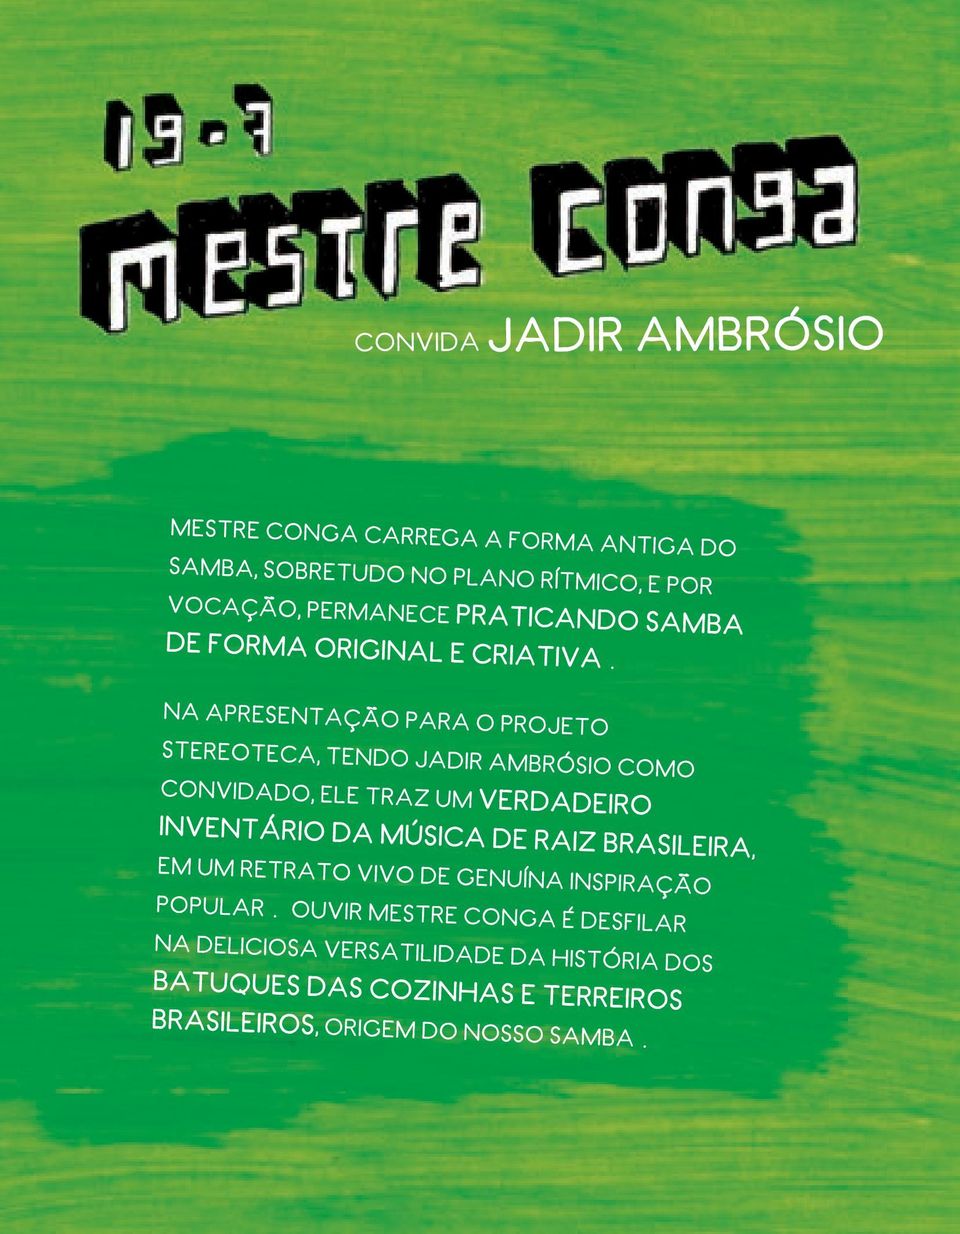 Na apresentação para o projeto Stereoteca, tendo Jadir Ambrósio como convidado, ele traz um verdadeiro inventário da música de